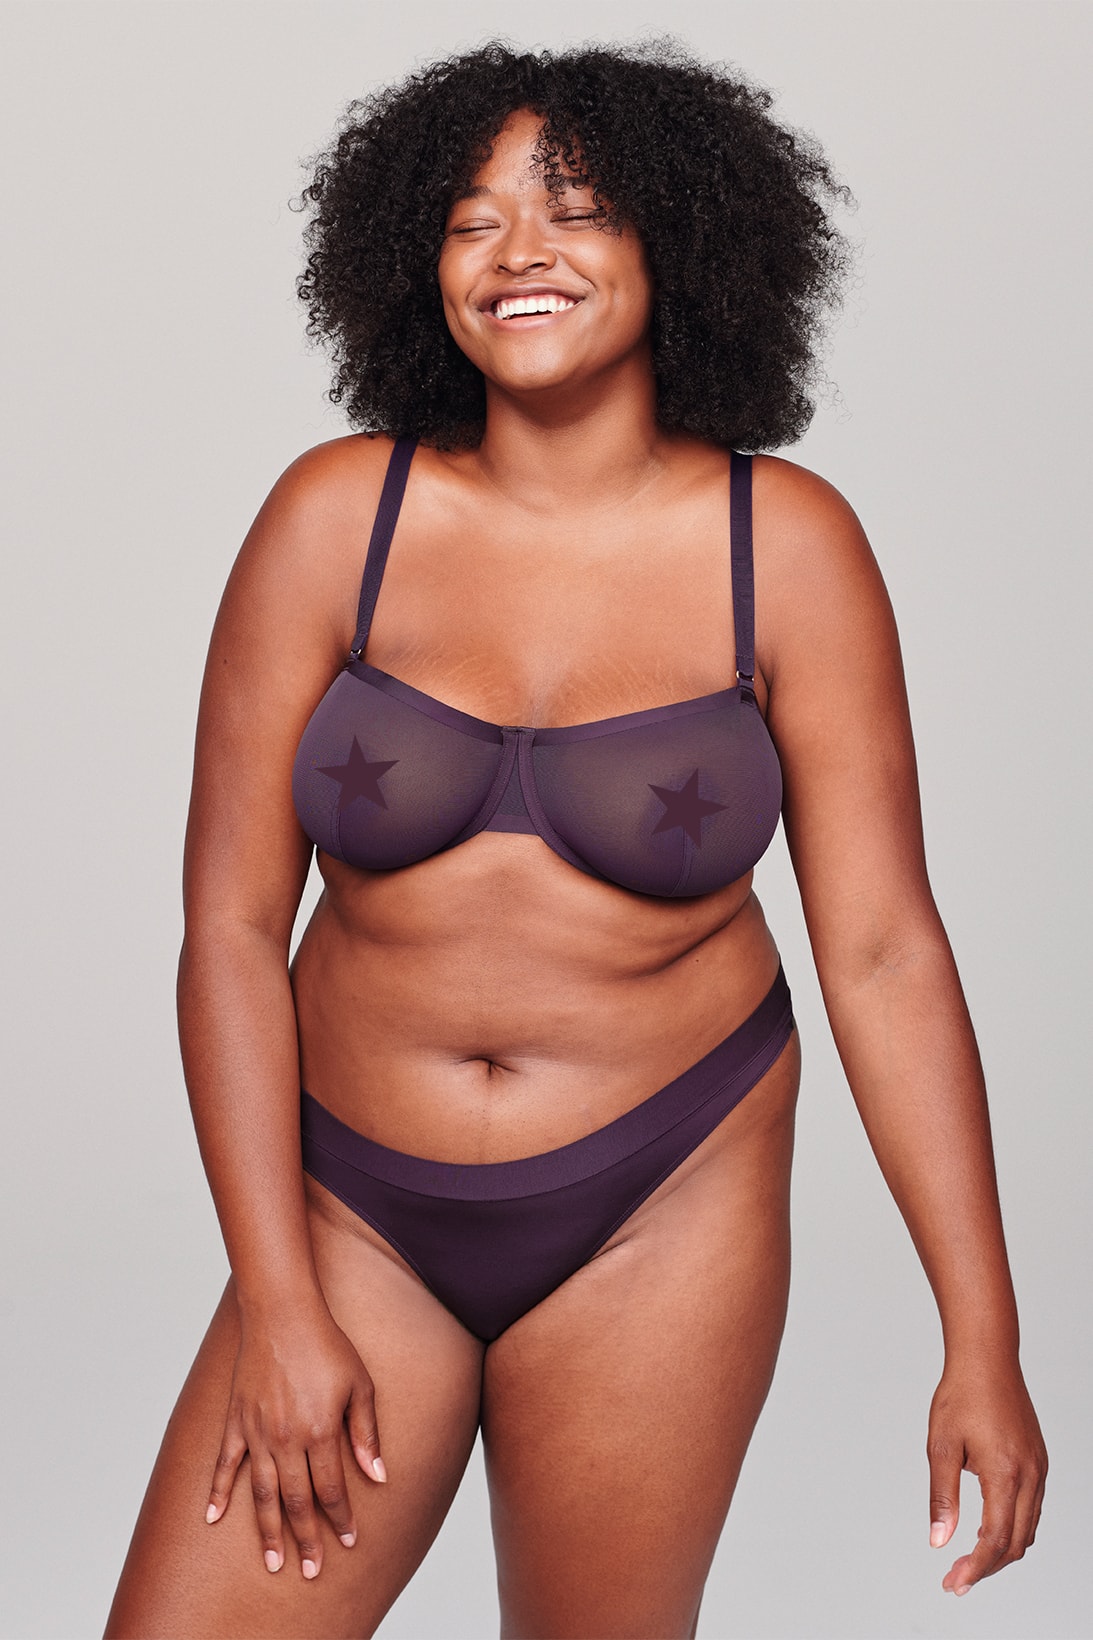 cuup dusk collection new colorway dark purple bras lingerie underwear